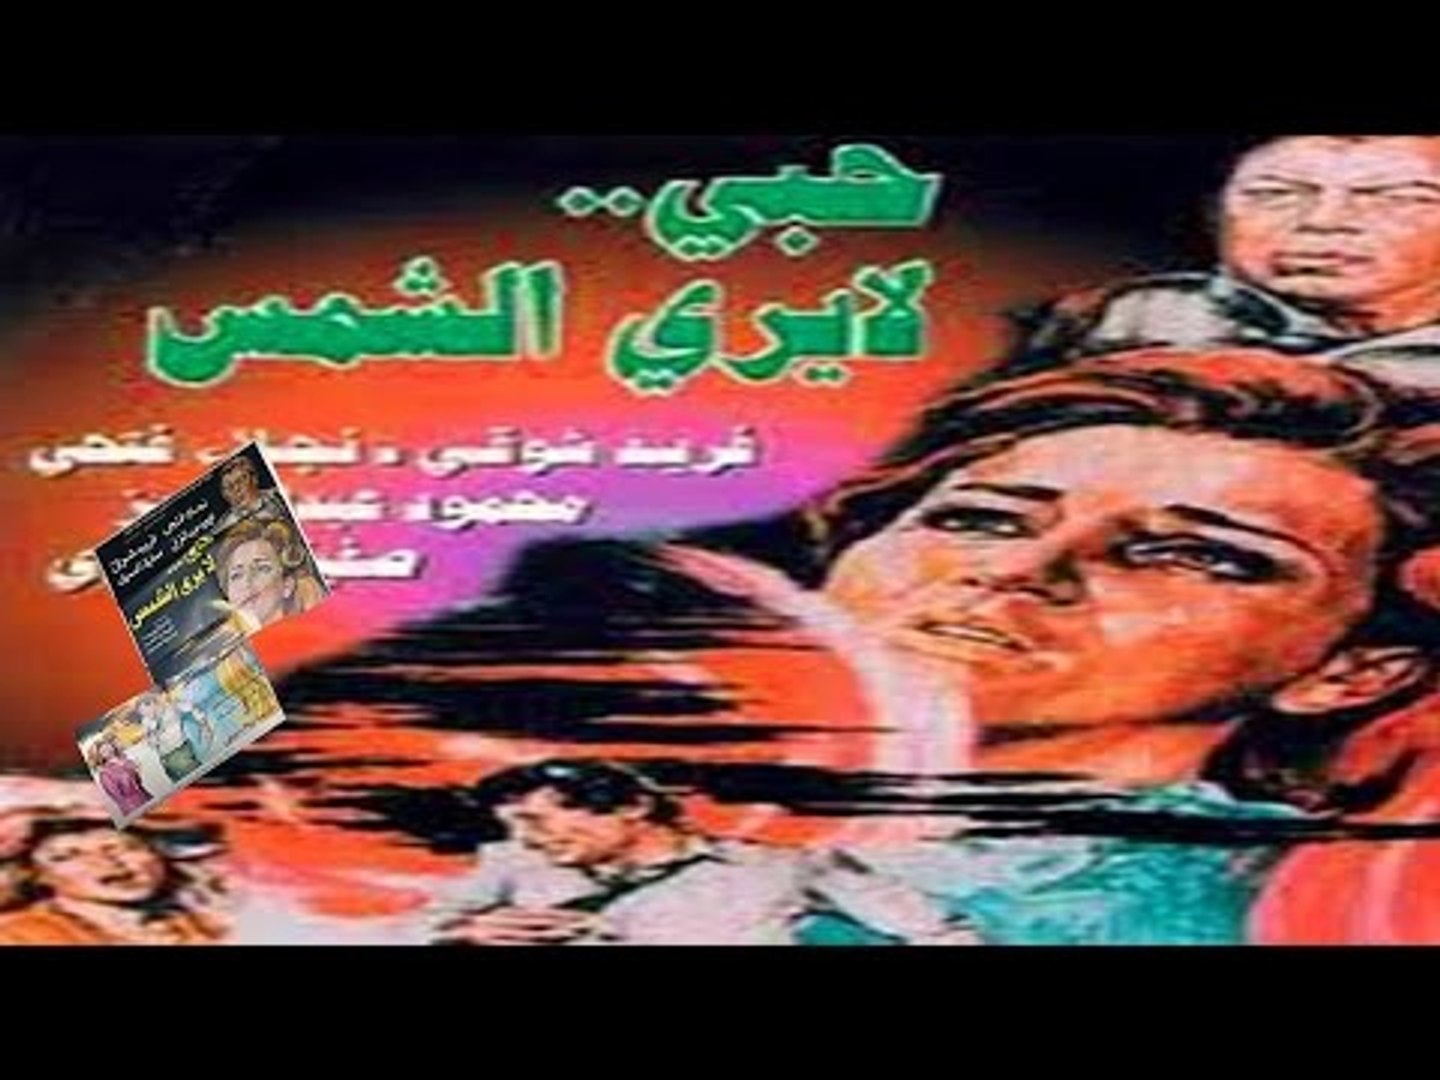 فيلم حب لا يرى الشمس | Hob La Yara El Shams Movie - فيديو Dailymotion